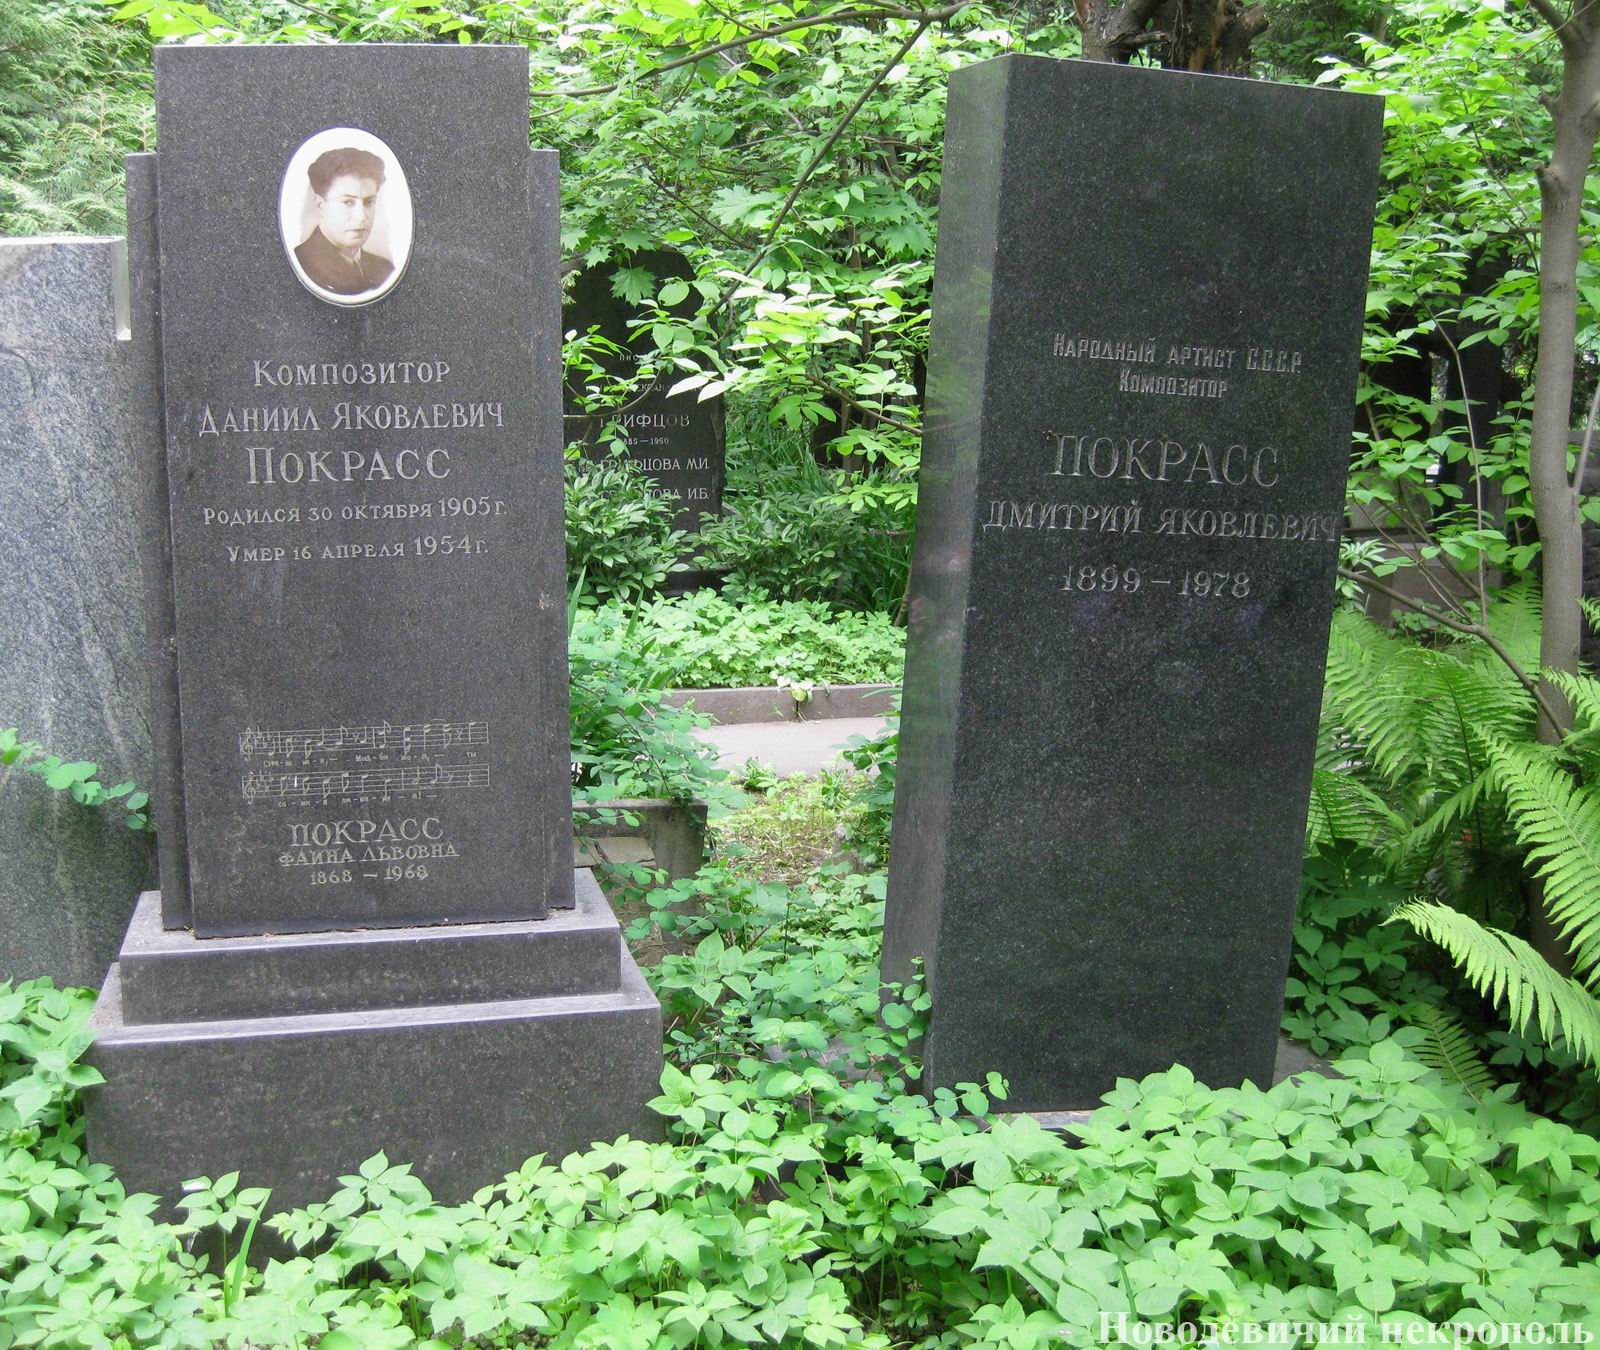 Памятник на могиле Покрасс Дан.Я. (1905-1954) и Дм.Я. (1899-1978), на Новодевичьем кладбище (4-40-9). Нажмите левую кнопку мыши, чтобы увидеть фрагмент памятника.